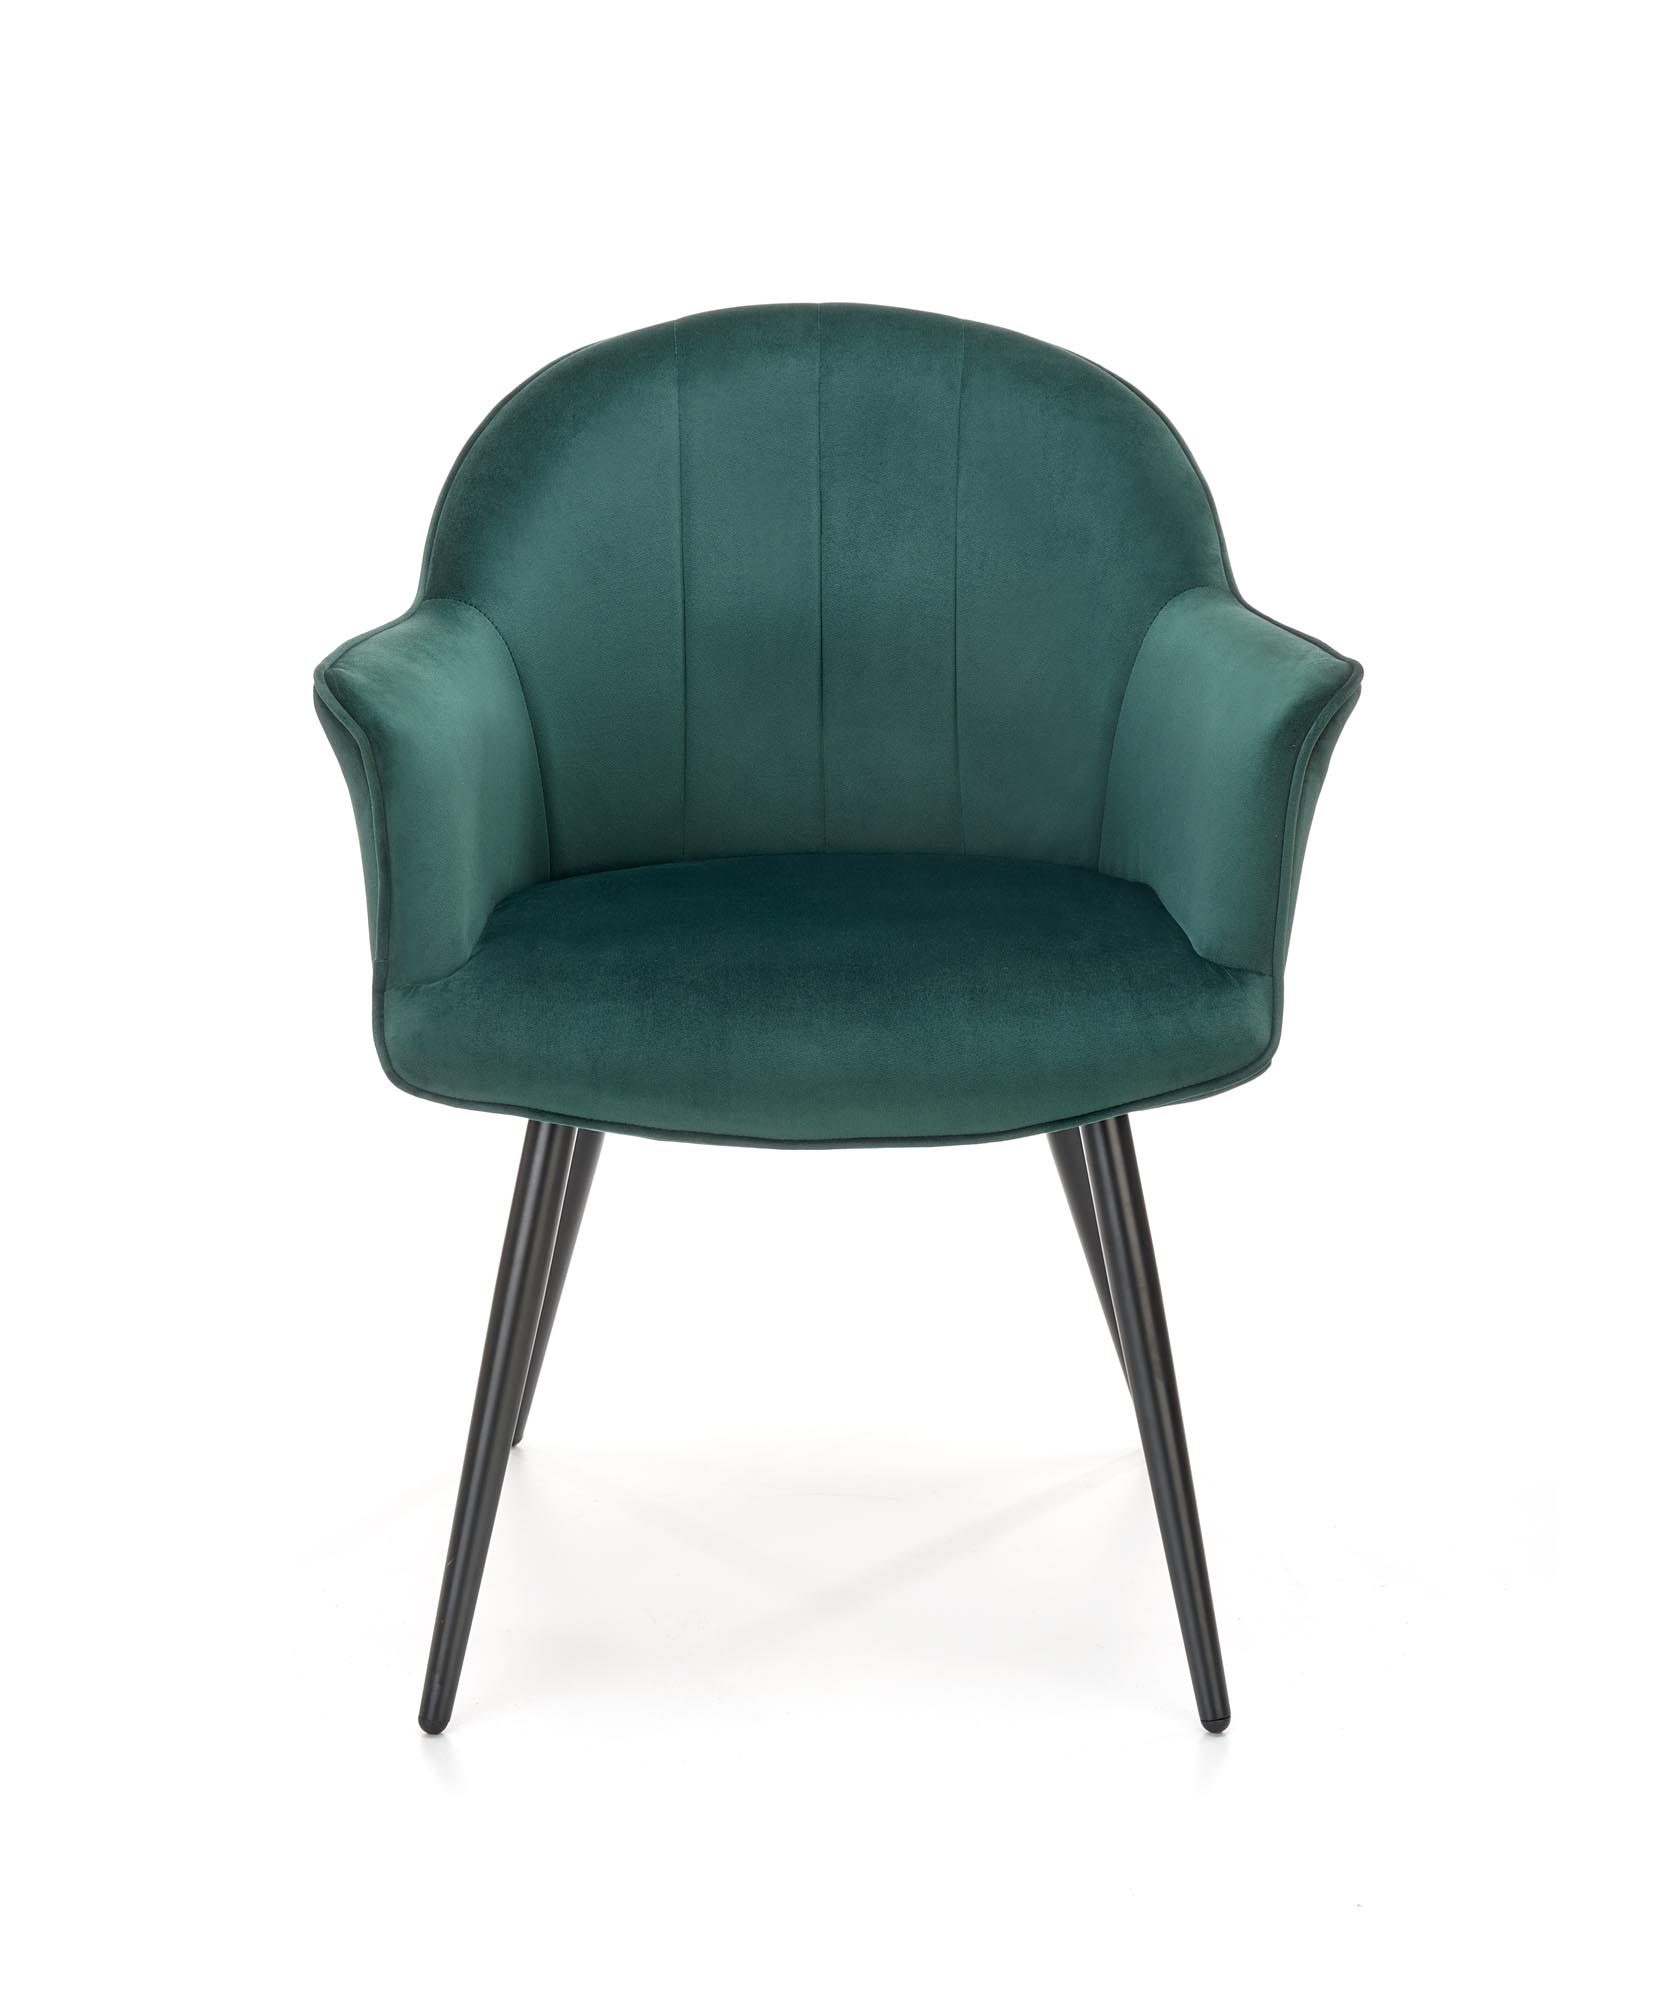 K468 krzesło ciemny zielony k468 krzesło ciemny zielony